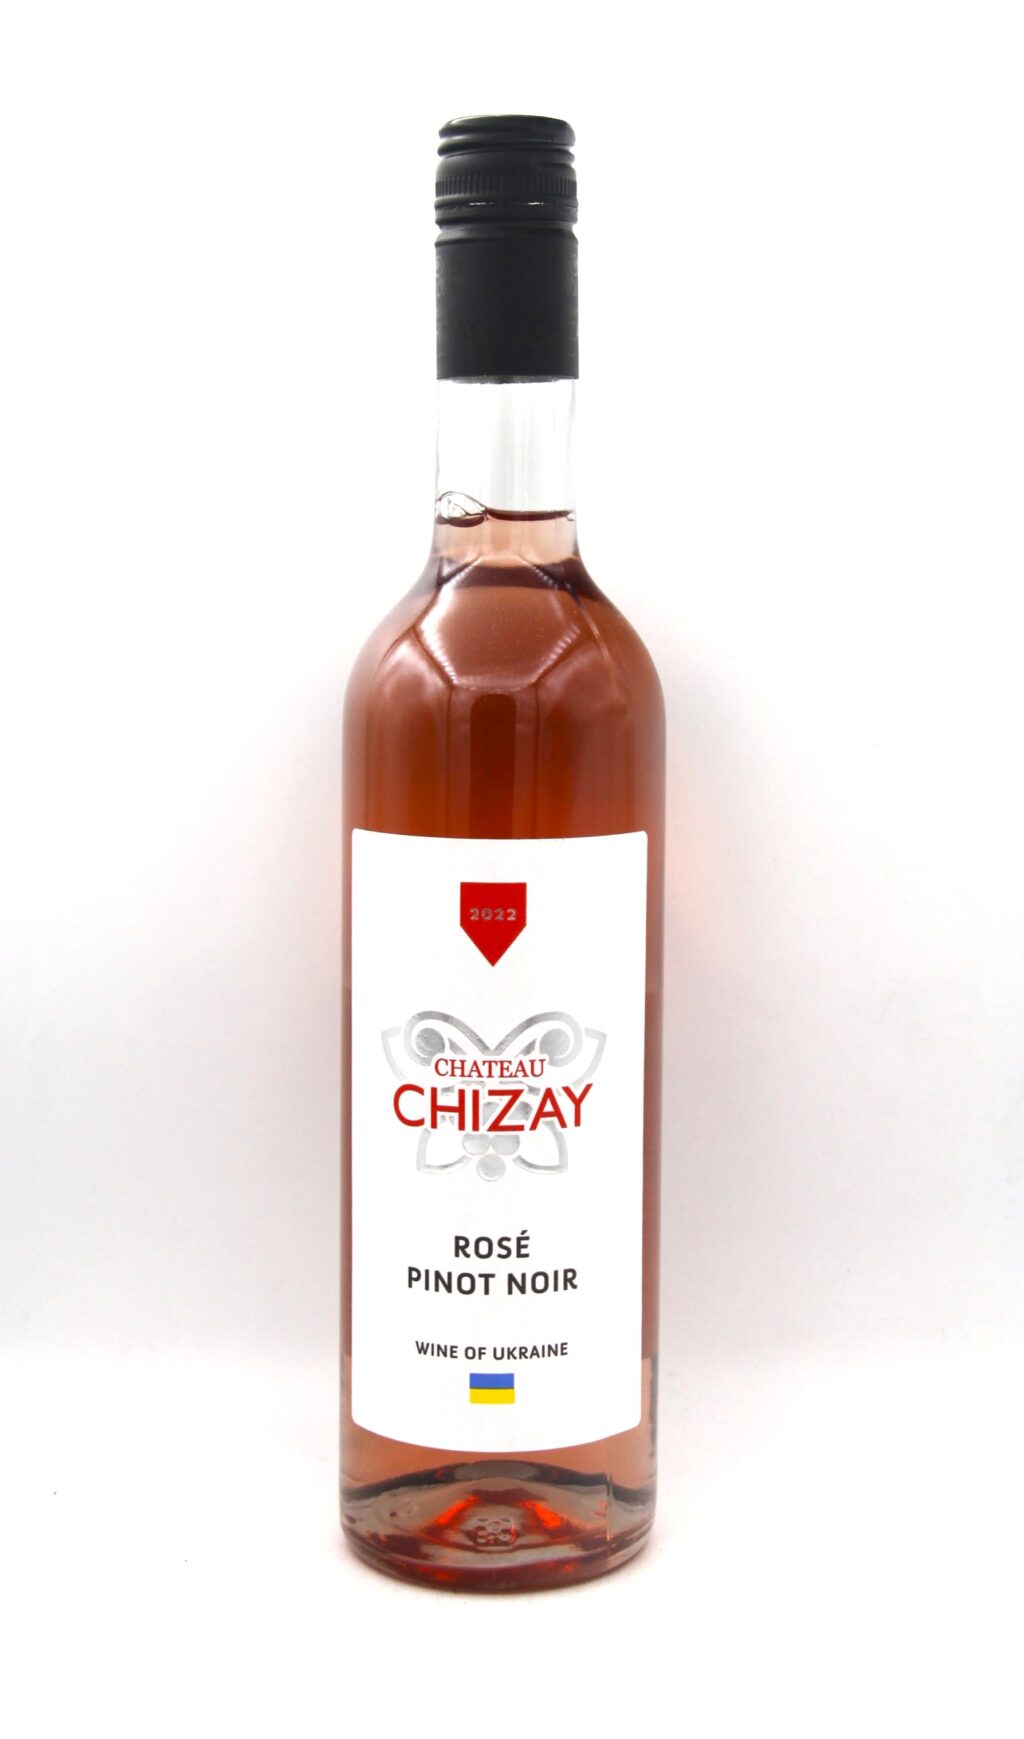 Chateau Chizay Pinot Noir Rose 2022